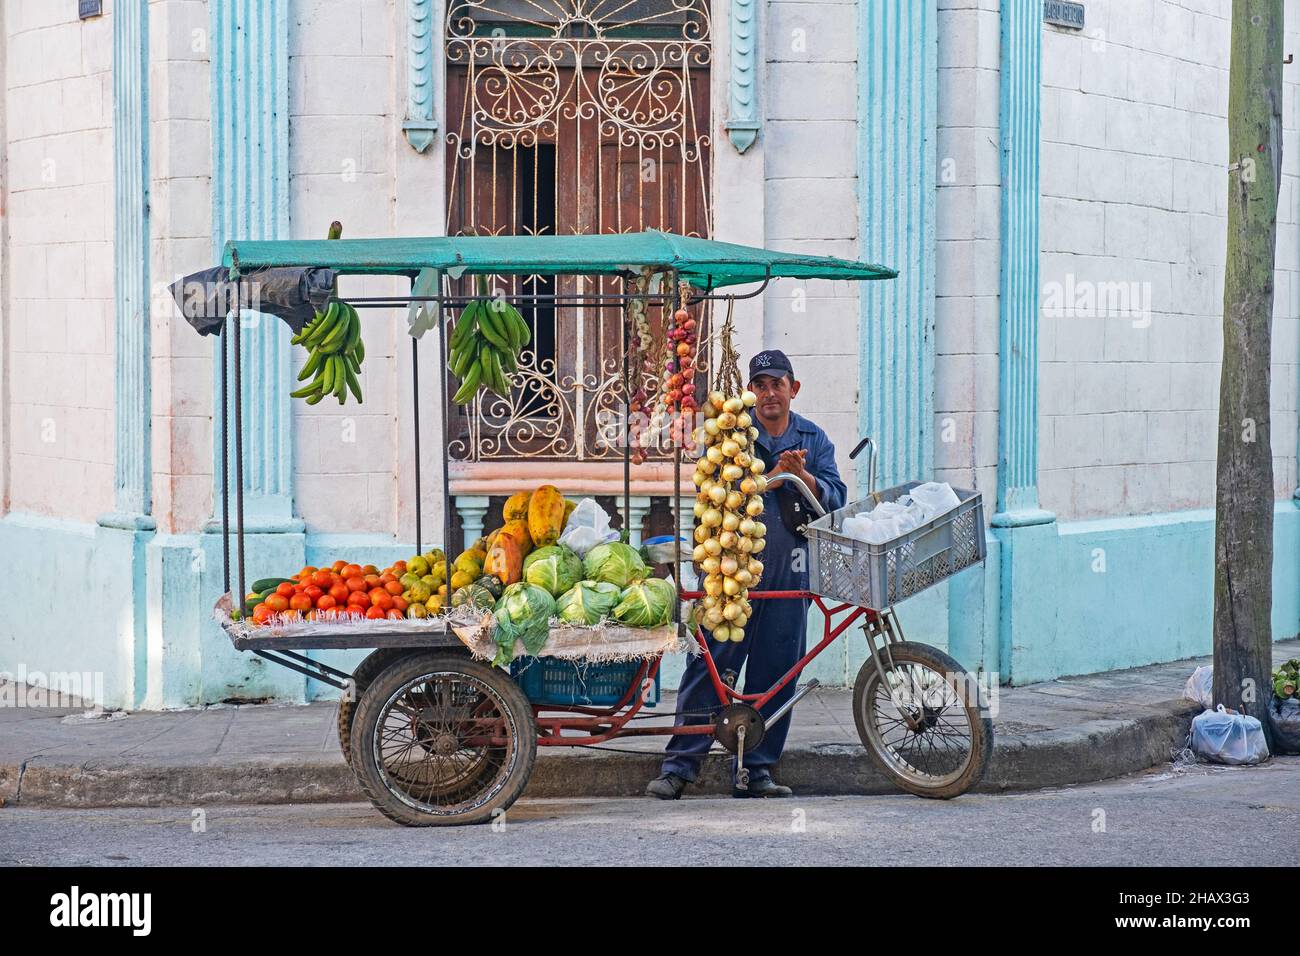 Compra y vende en Cuba